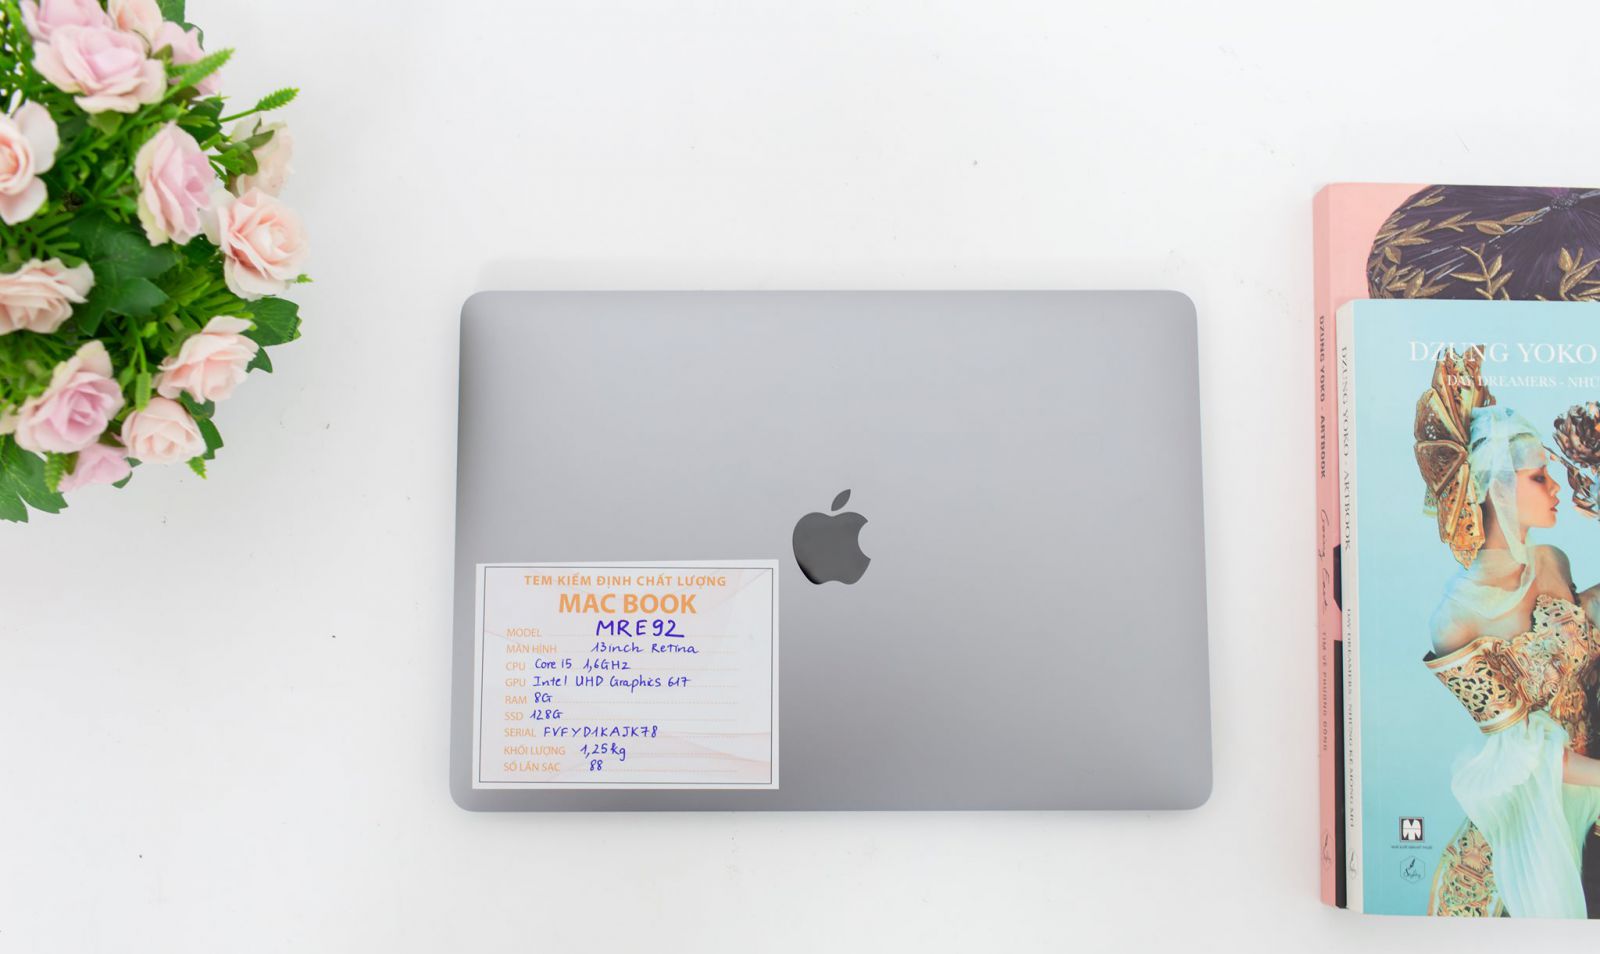 MacBook Air 2018 MRE92 mang đến cho người dùng một thiết kế đột phá